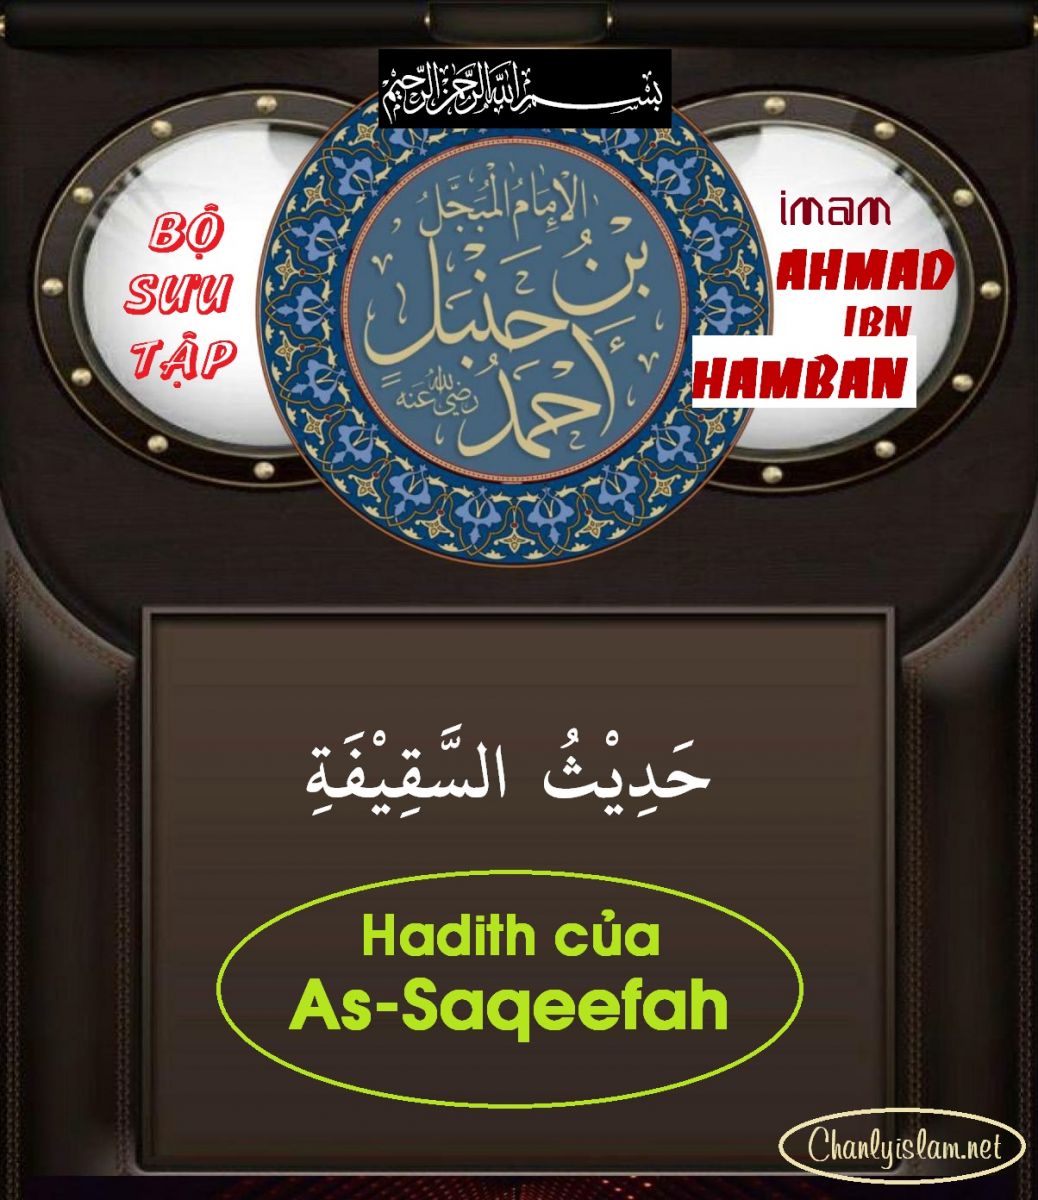 BỘ SƯU TẬP MUSNAD IMAM AHMAD IBN HAMBAN - CHƯƠNG 3 - HADITH CỦA AS - SAQEEFAH